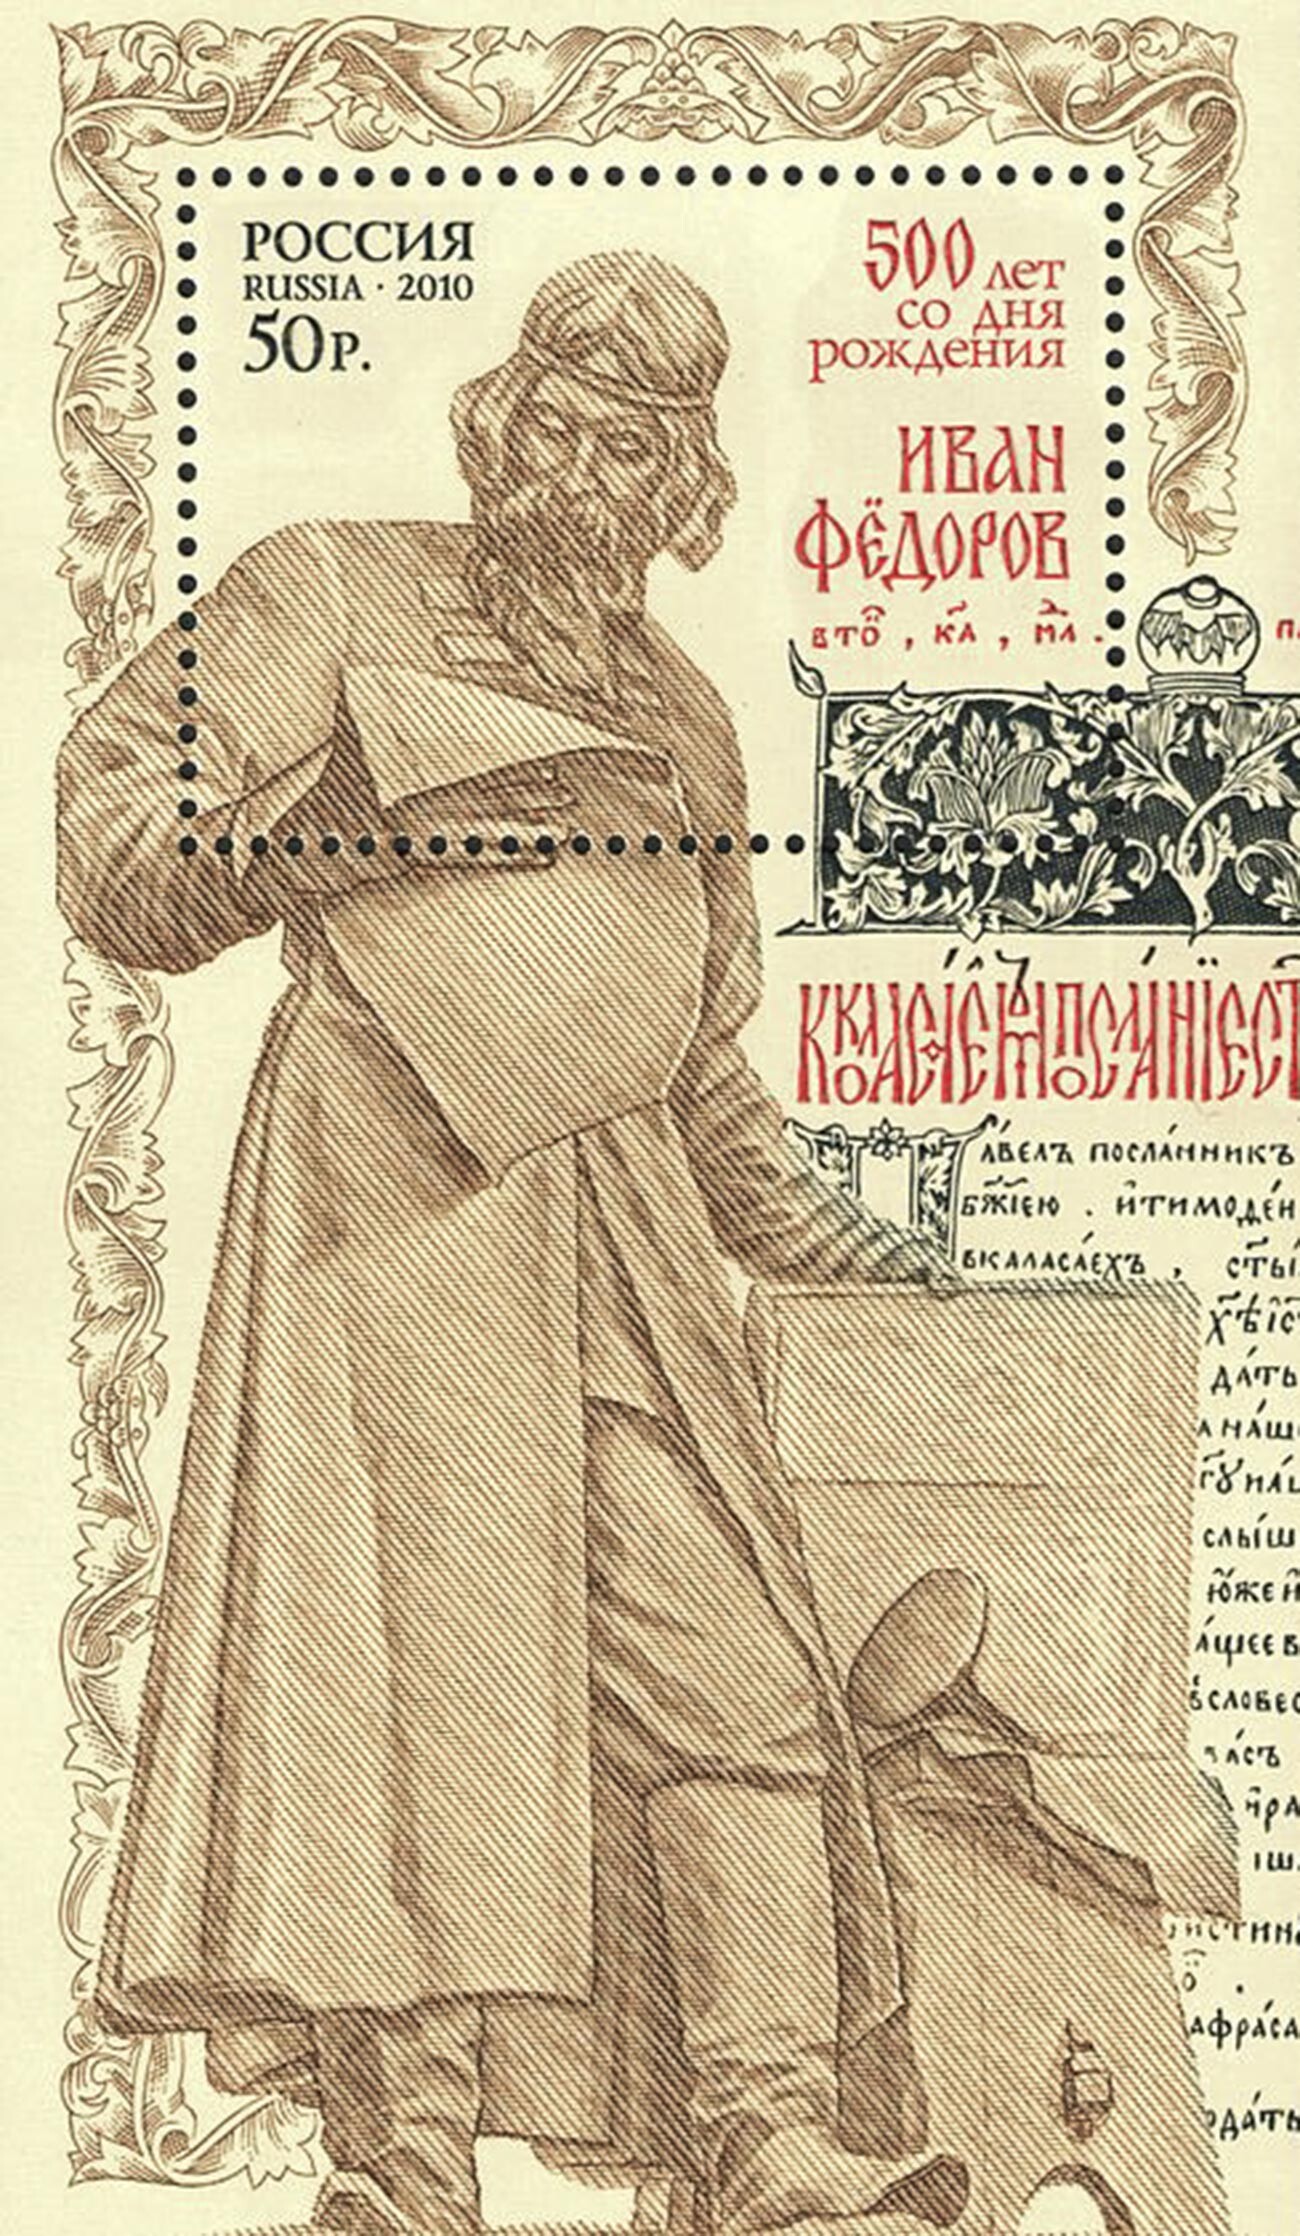 Timbre issu à l'occasion du 500e anniversaire d'Ivan Fiodorov